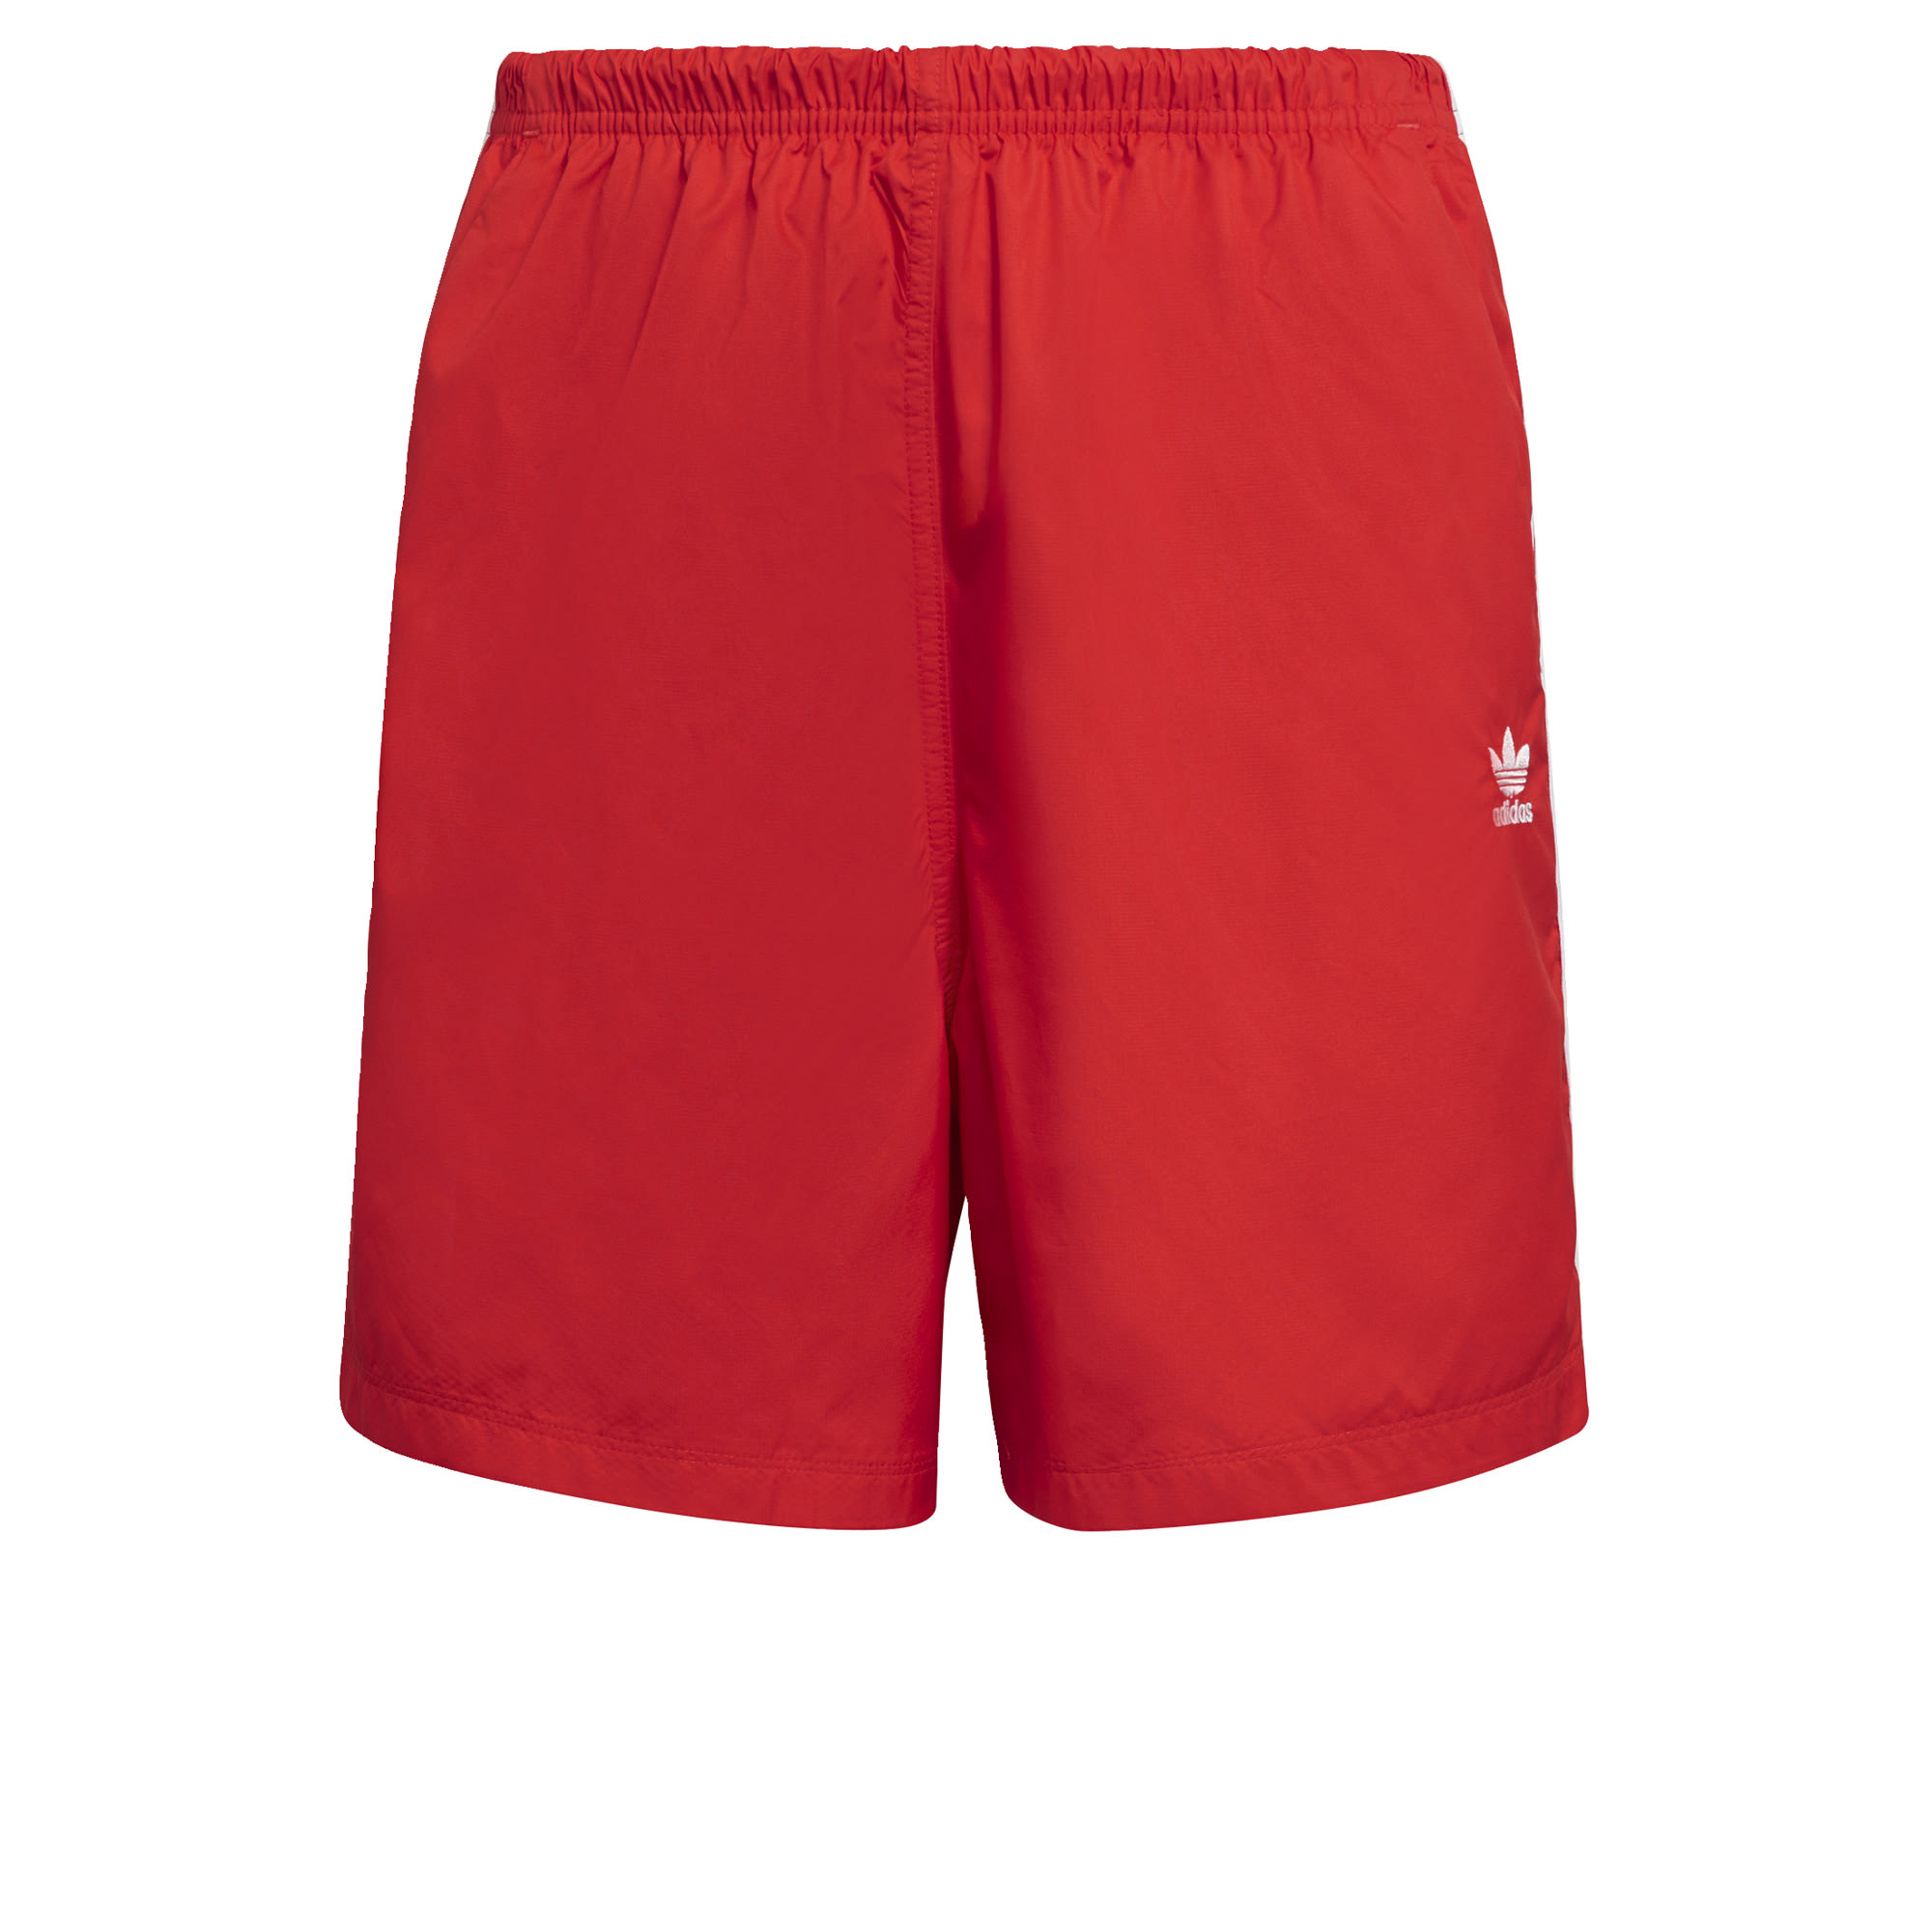 Odzież Kobiety ADIDAS ORIGINALS Spodnie sportowe w kolorze Czerwonym 